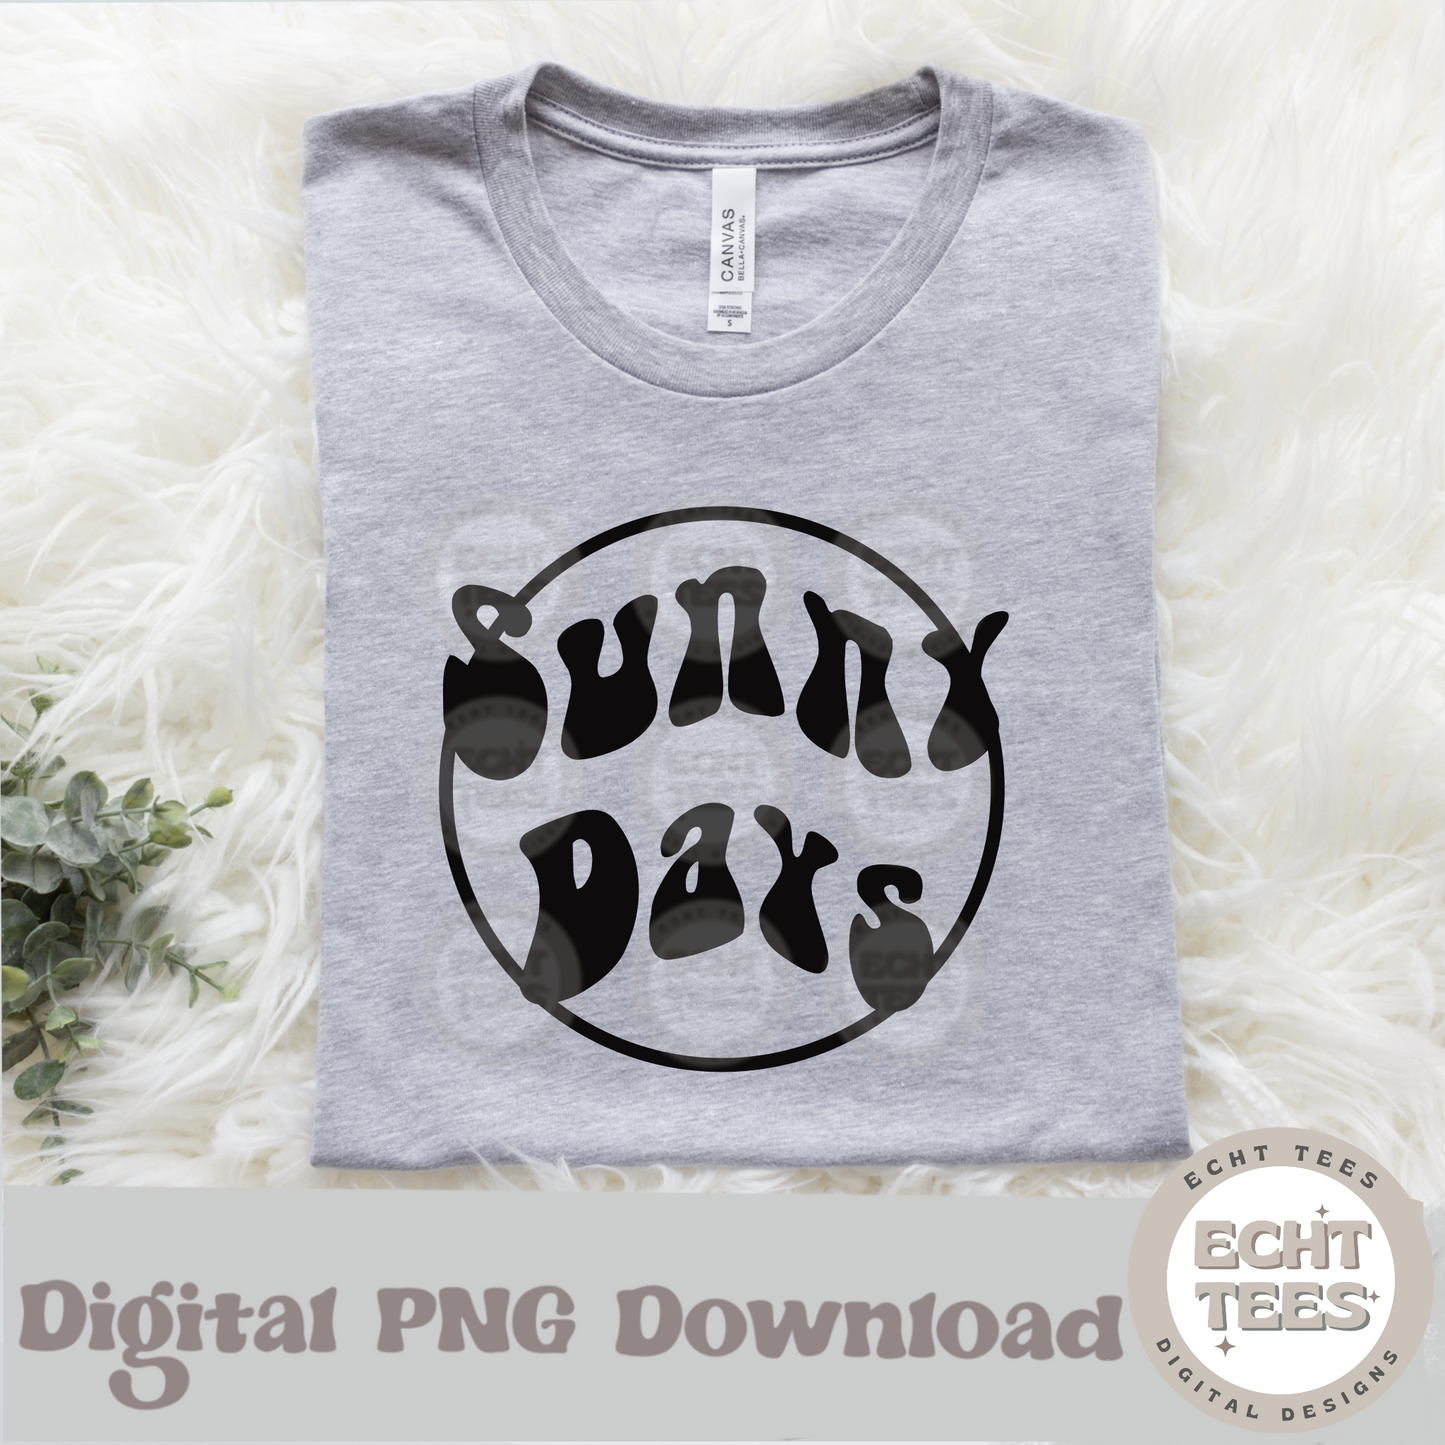 Sunny days PNG Digital Download